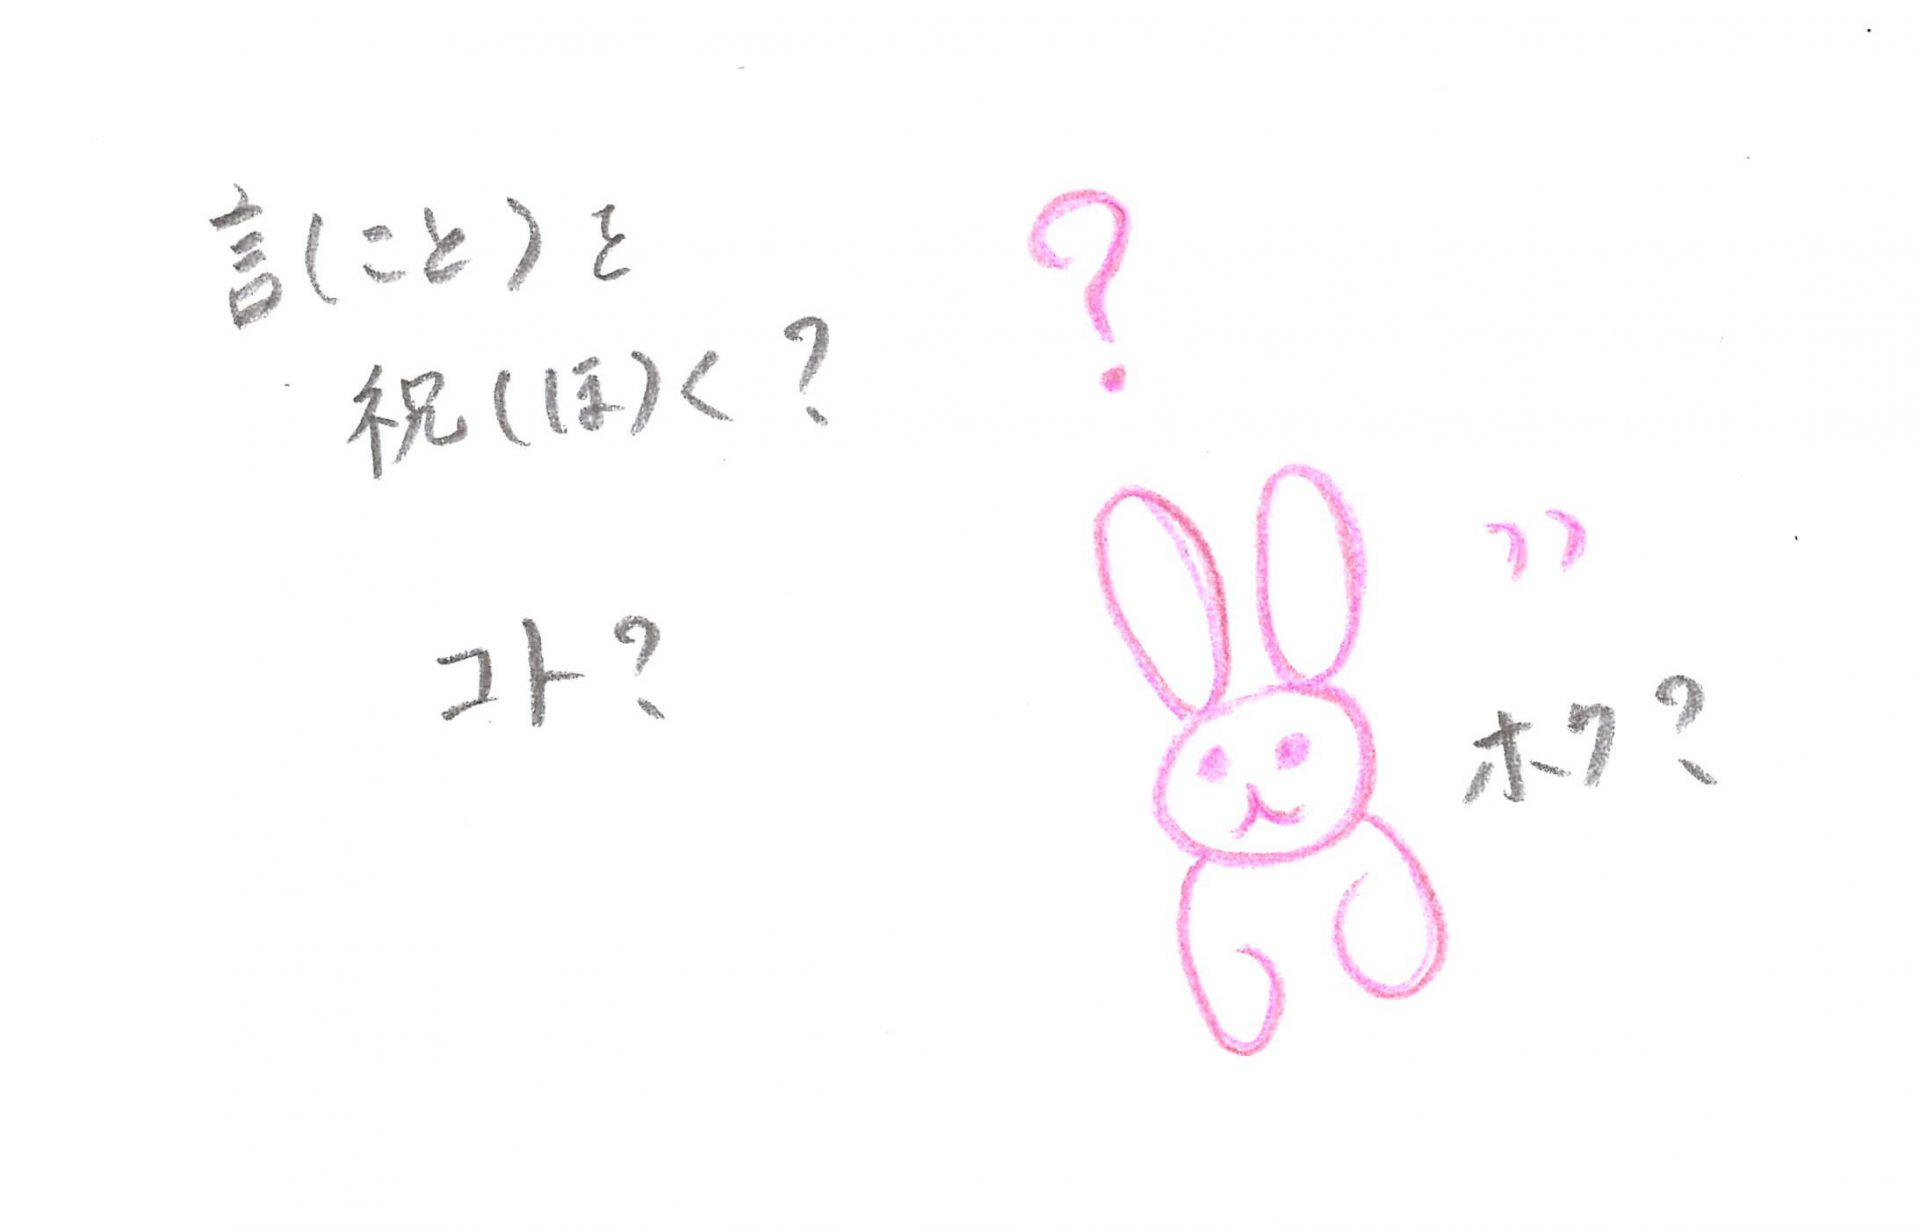 ピンクの色鉛筆で描かれたうさぎが、「言（こと）を祝（ほ）く？ホク？」と自問している絵図。黒鉛筆手書きセリフ。